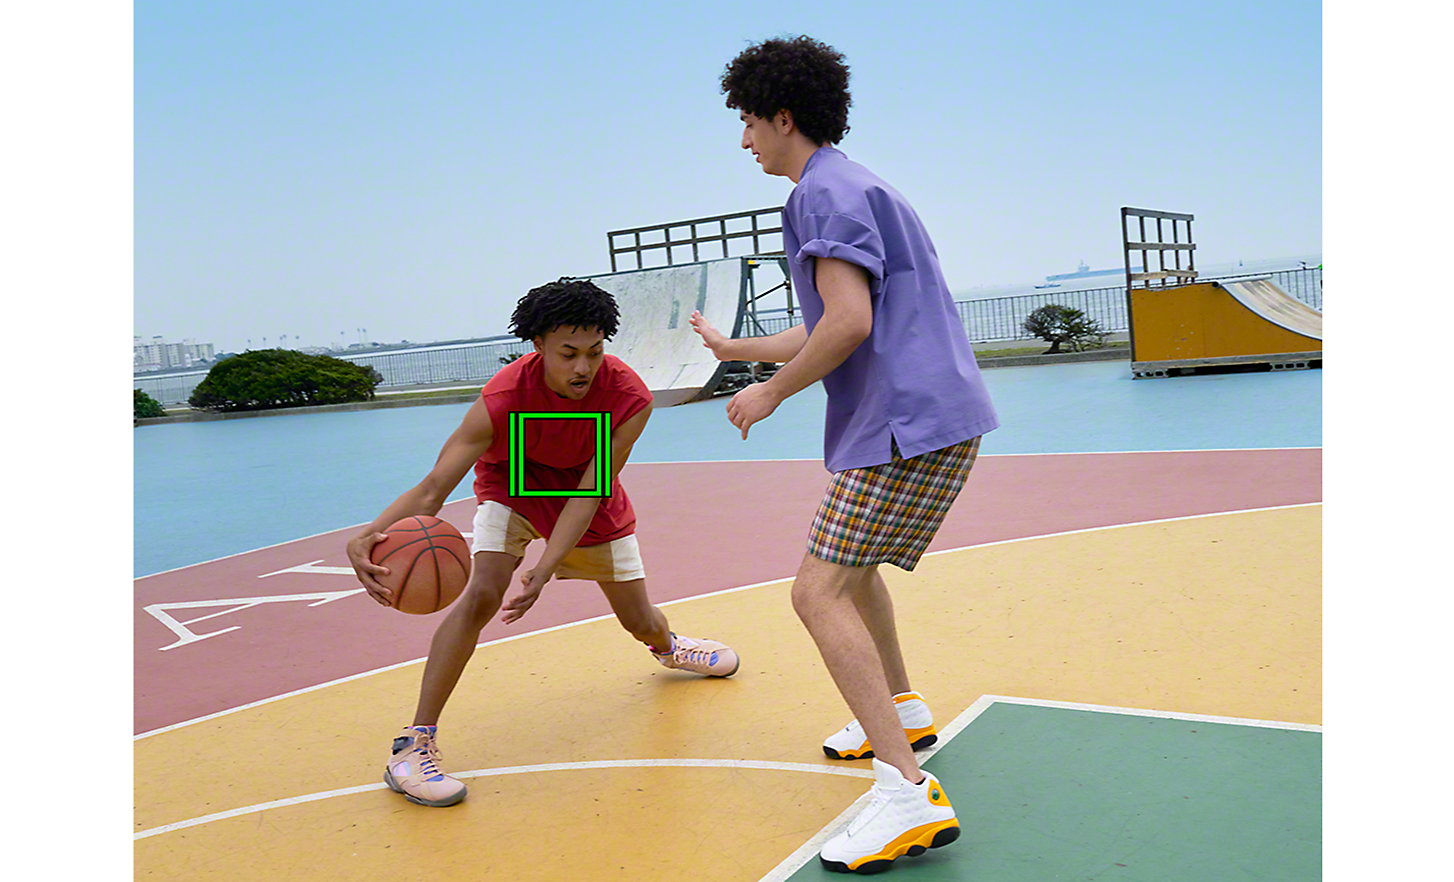 Basketbalový zápas jeden na jedného so zeleným štvorčekom, ktorý označuje sledovanie v reálnom čase